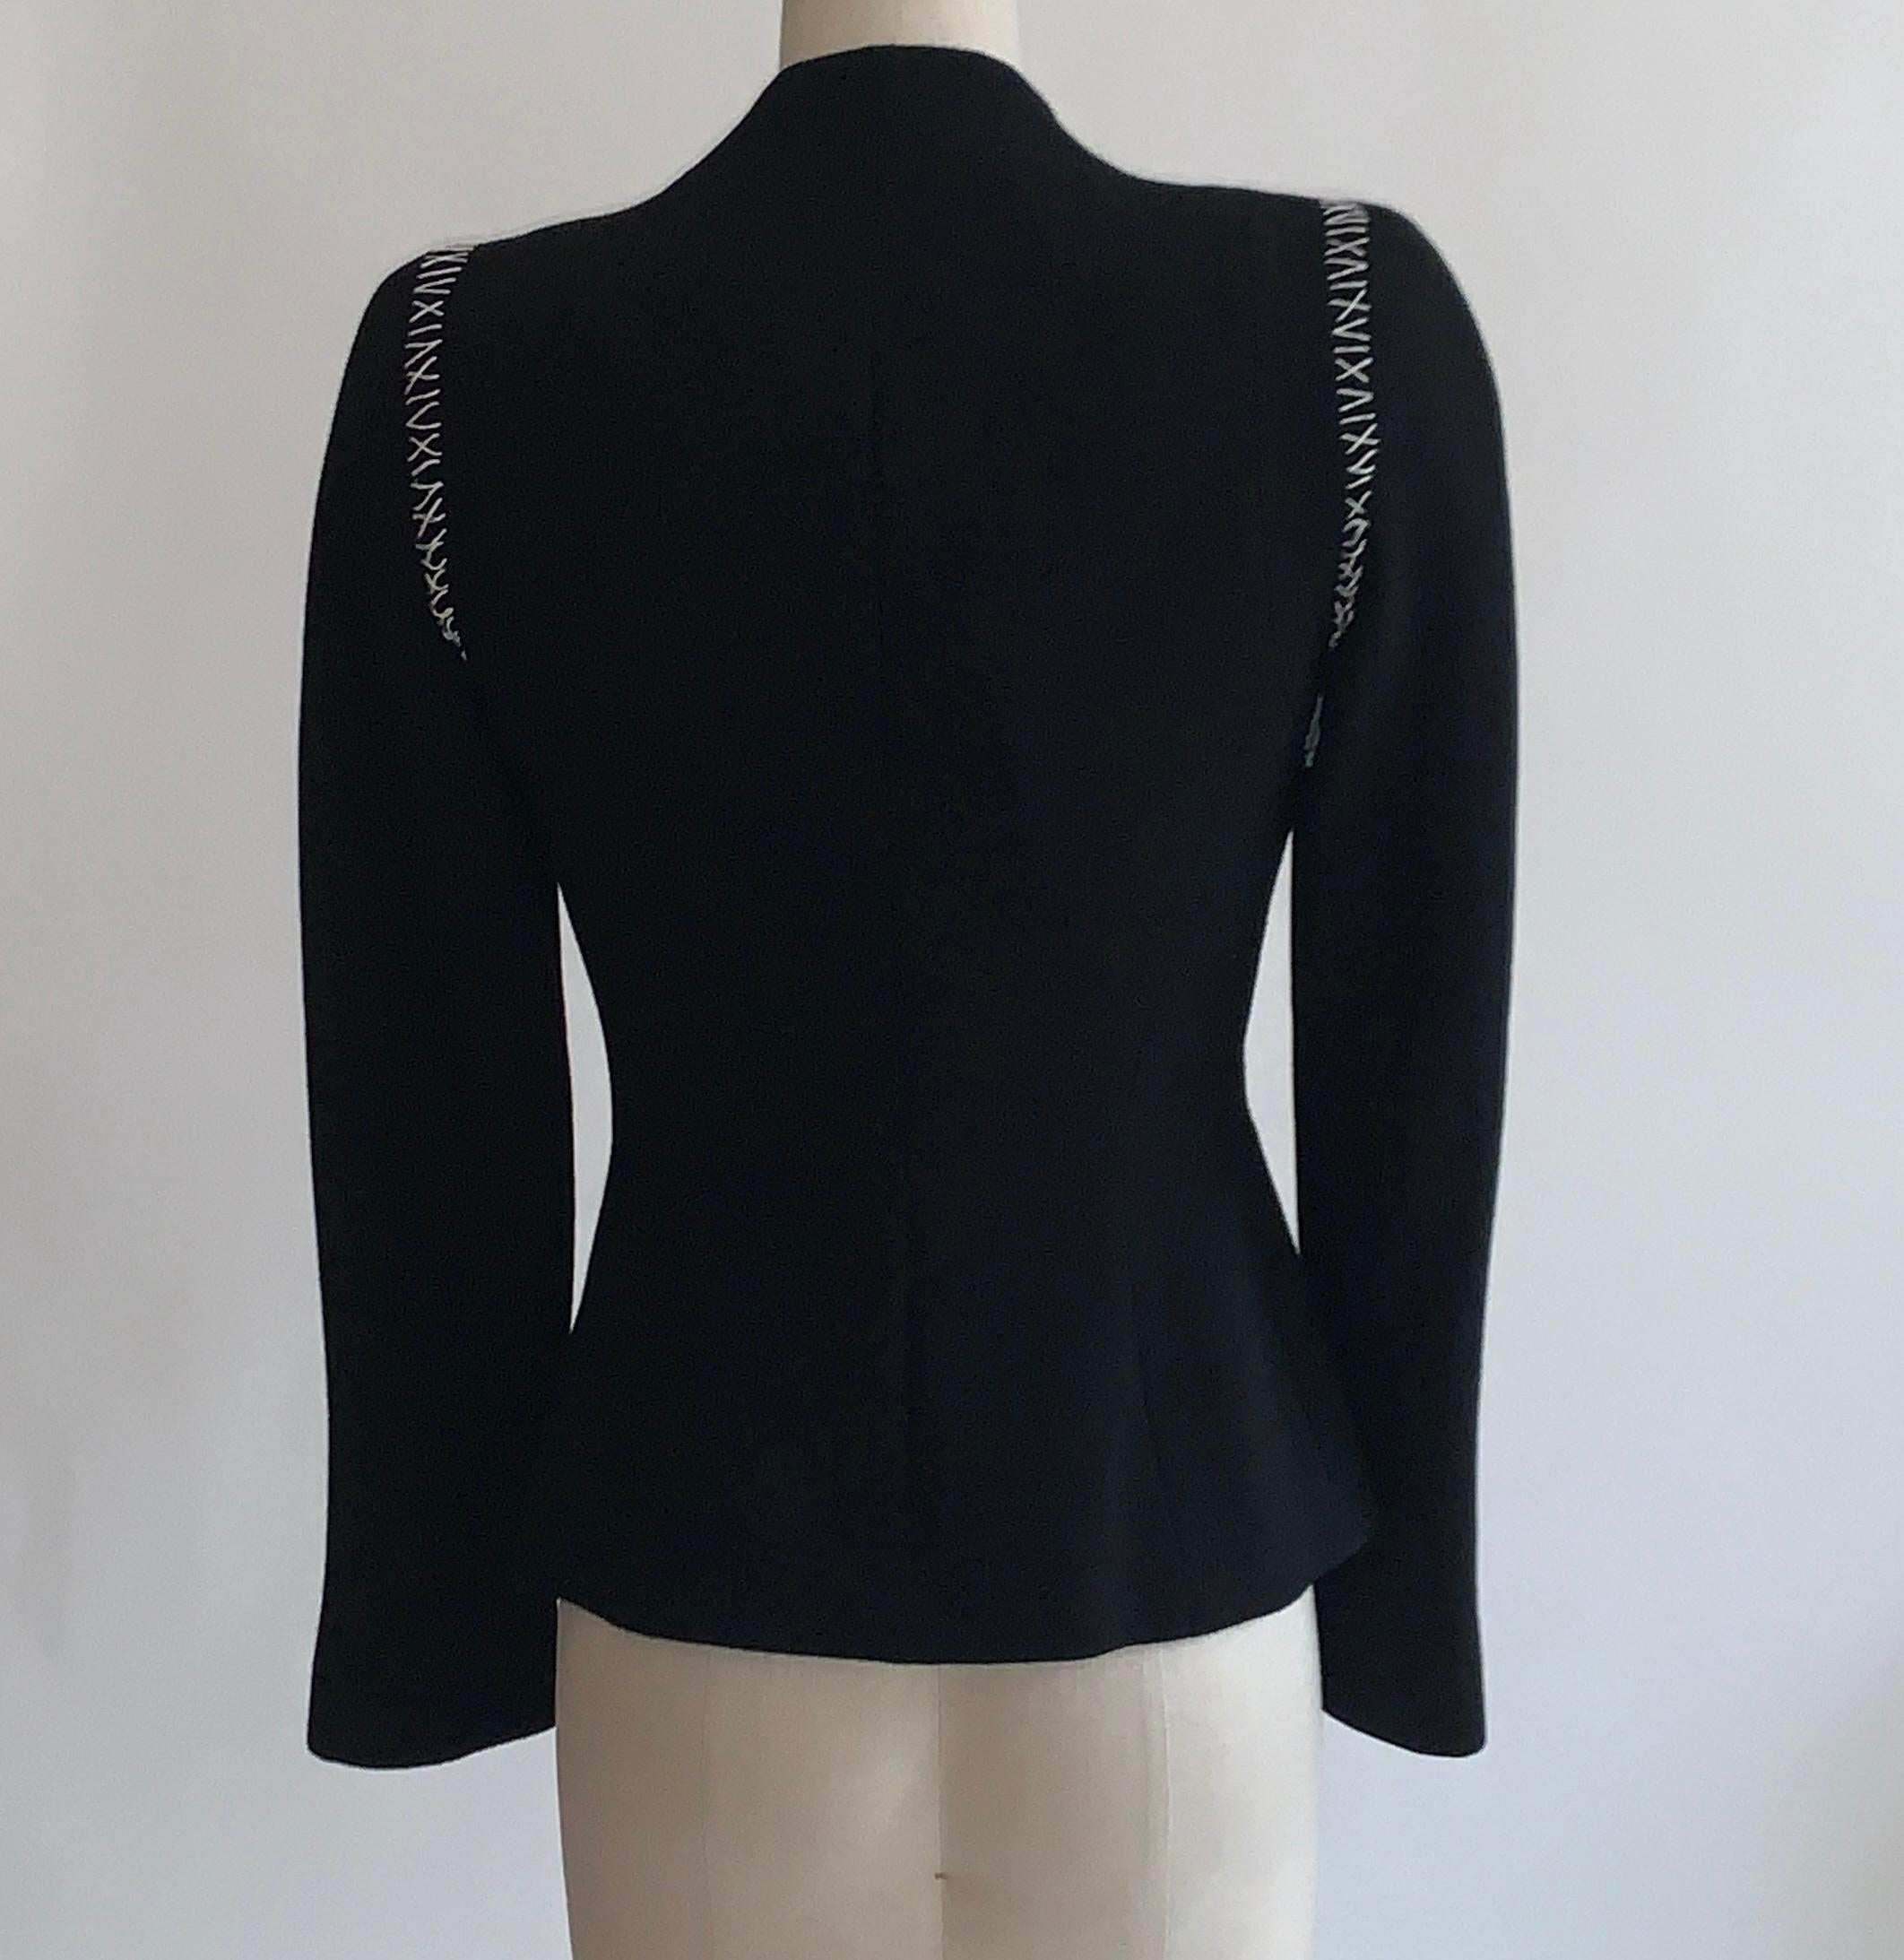 Women's Alexander McQueen 2004 Black Tailored Jacket with White Stitch Detail